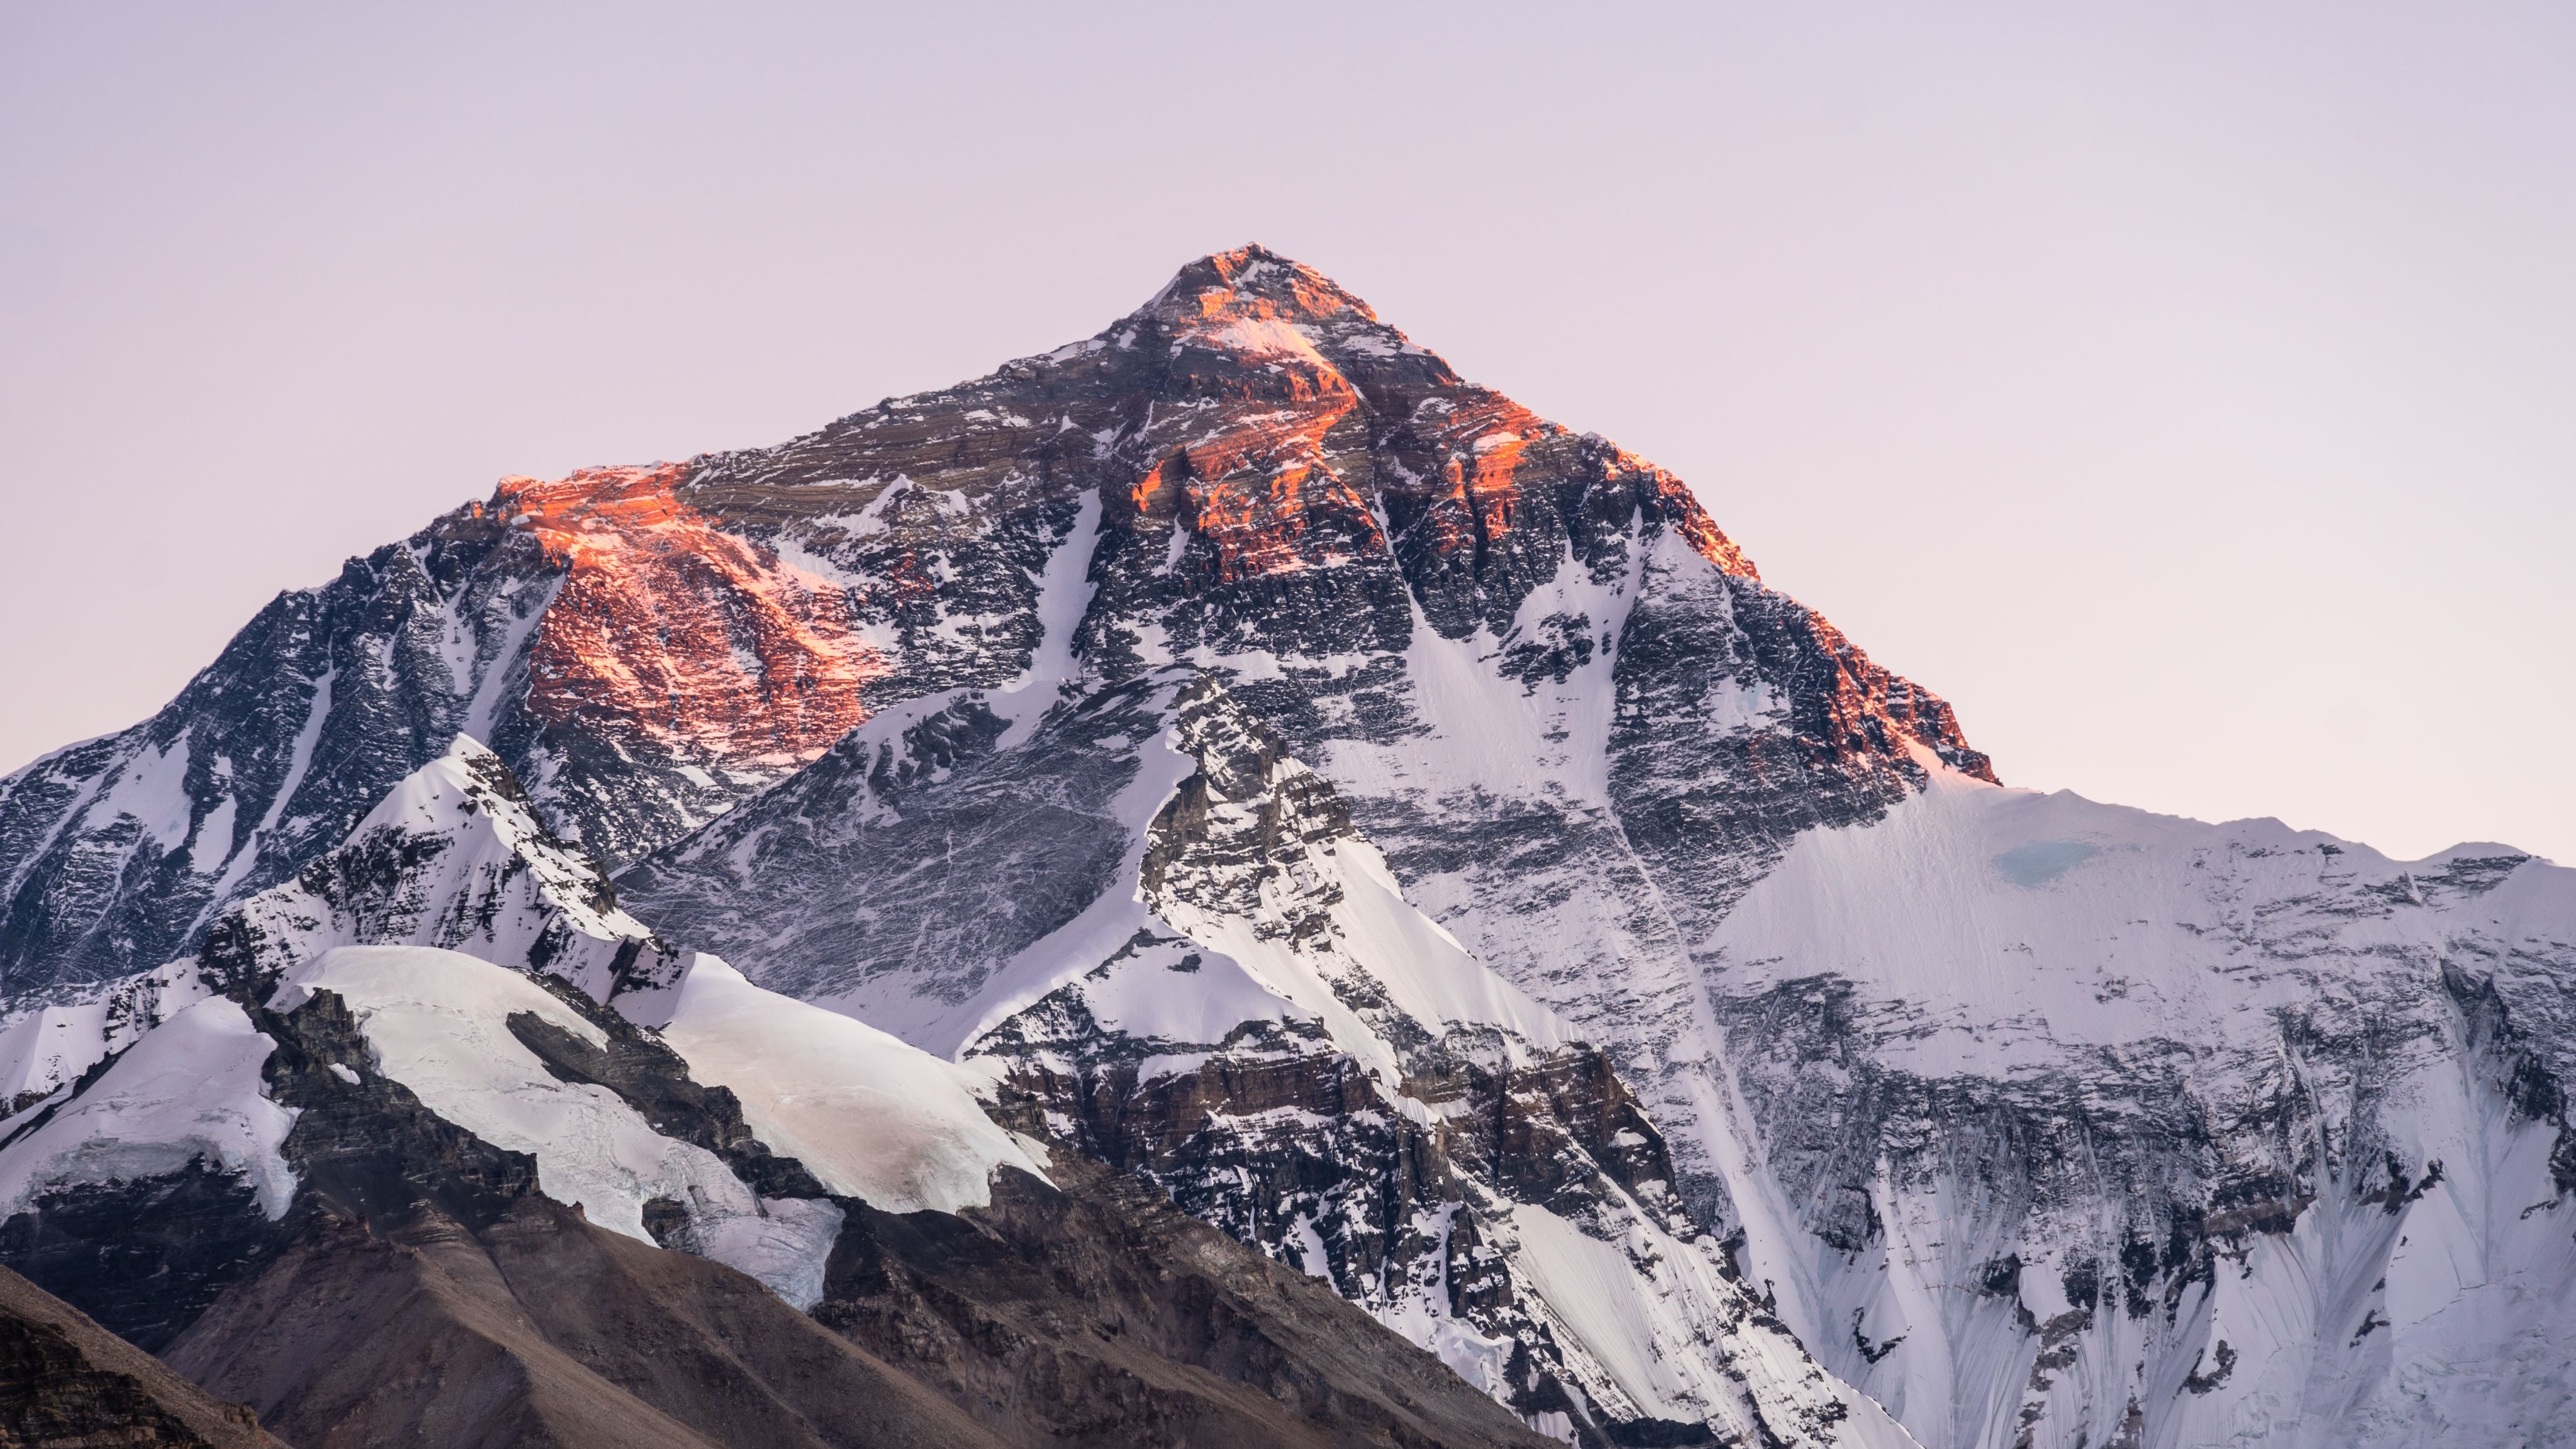 Sunset over Everest